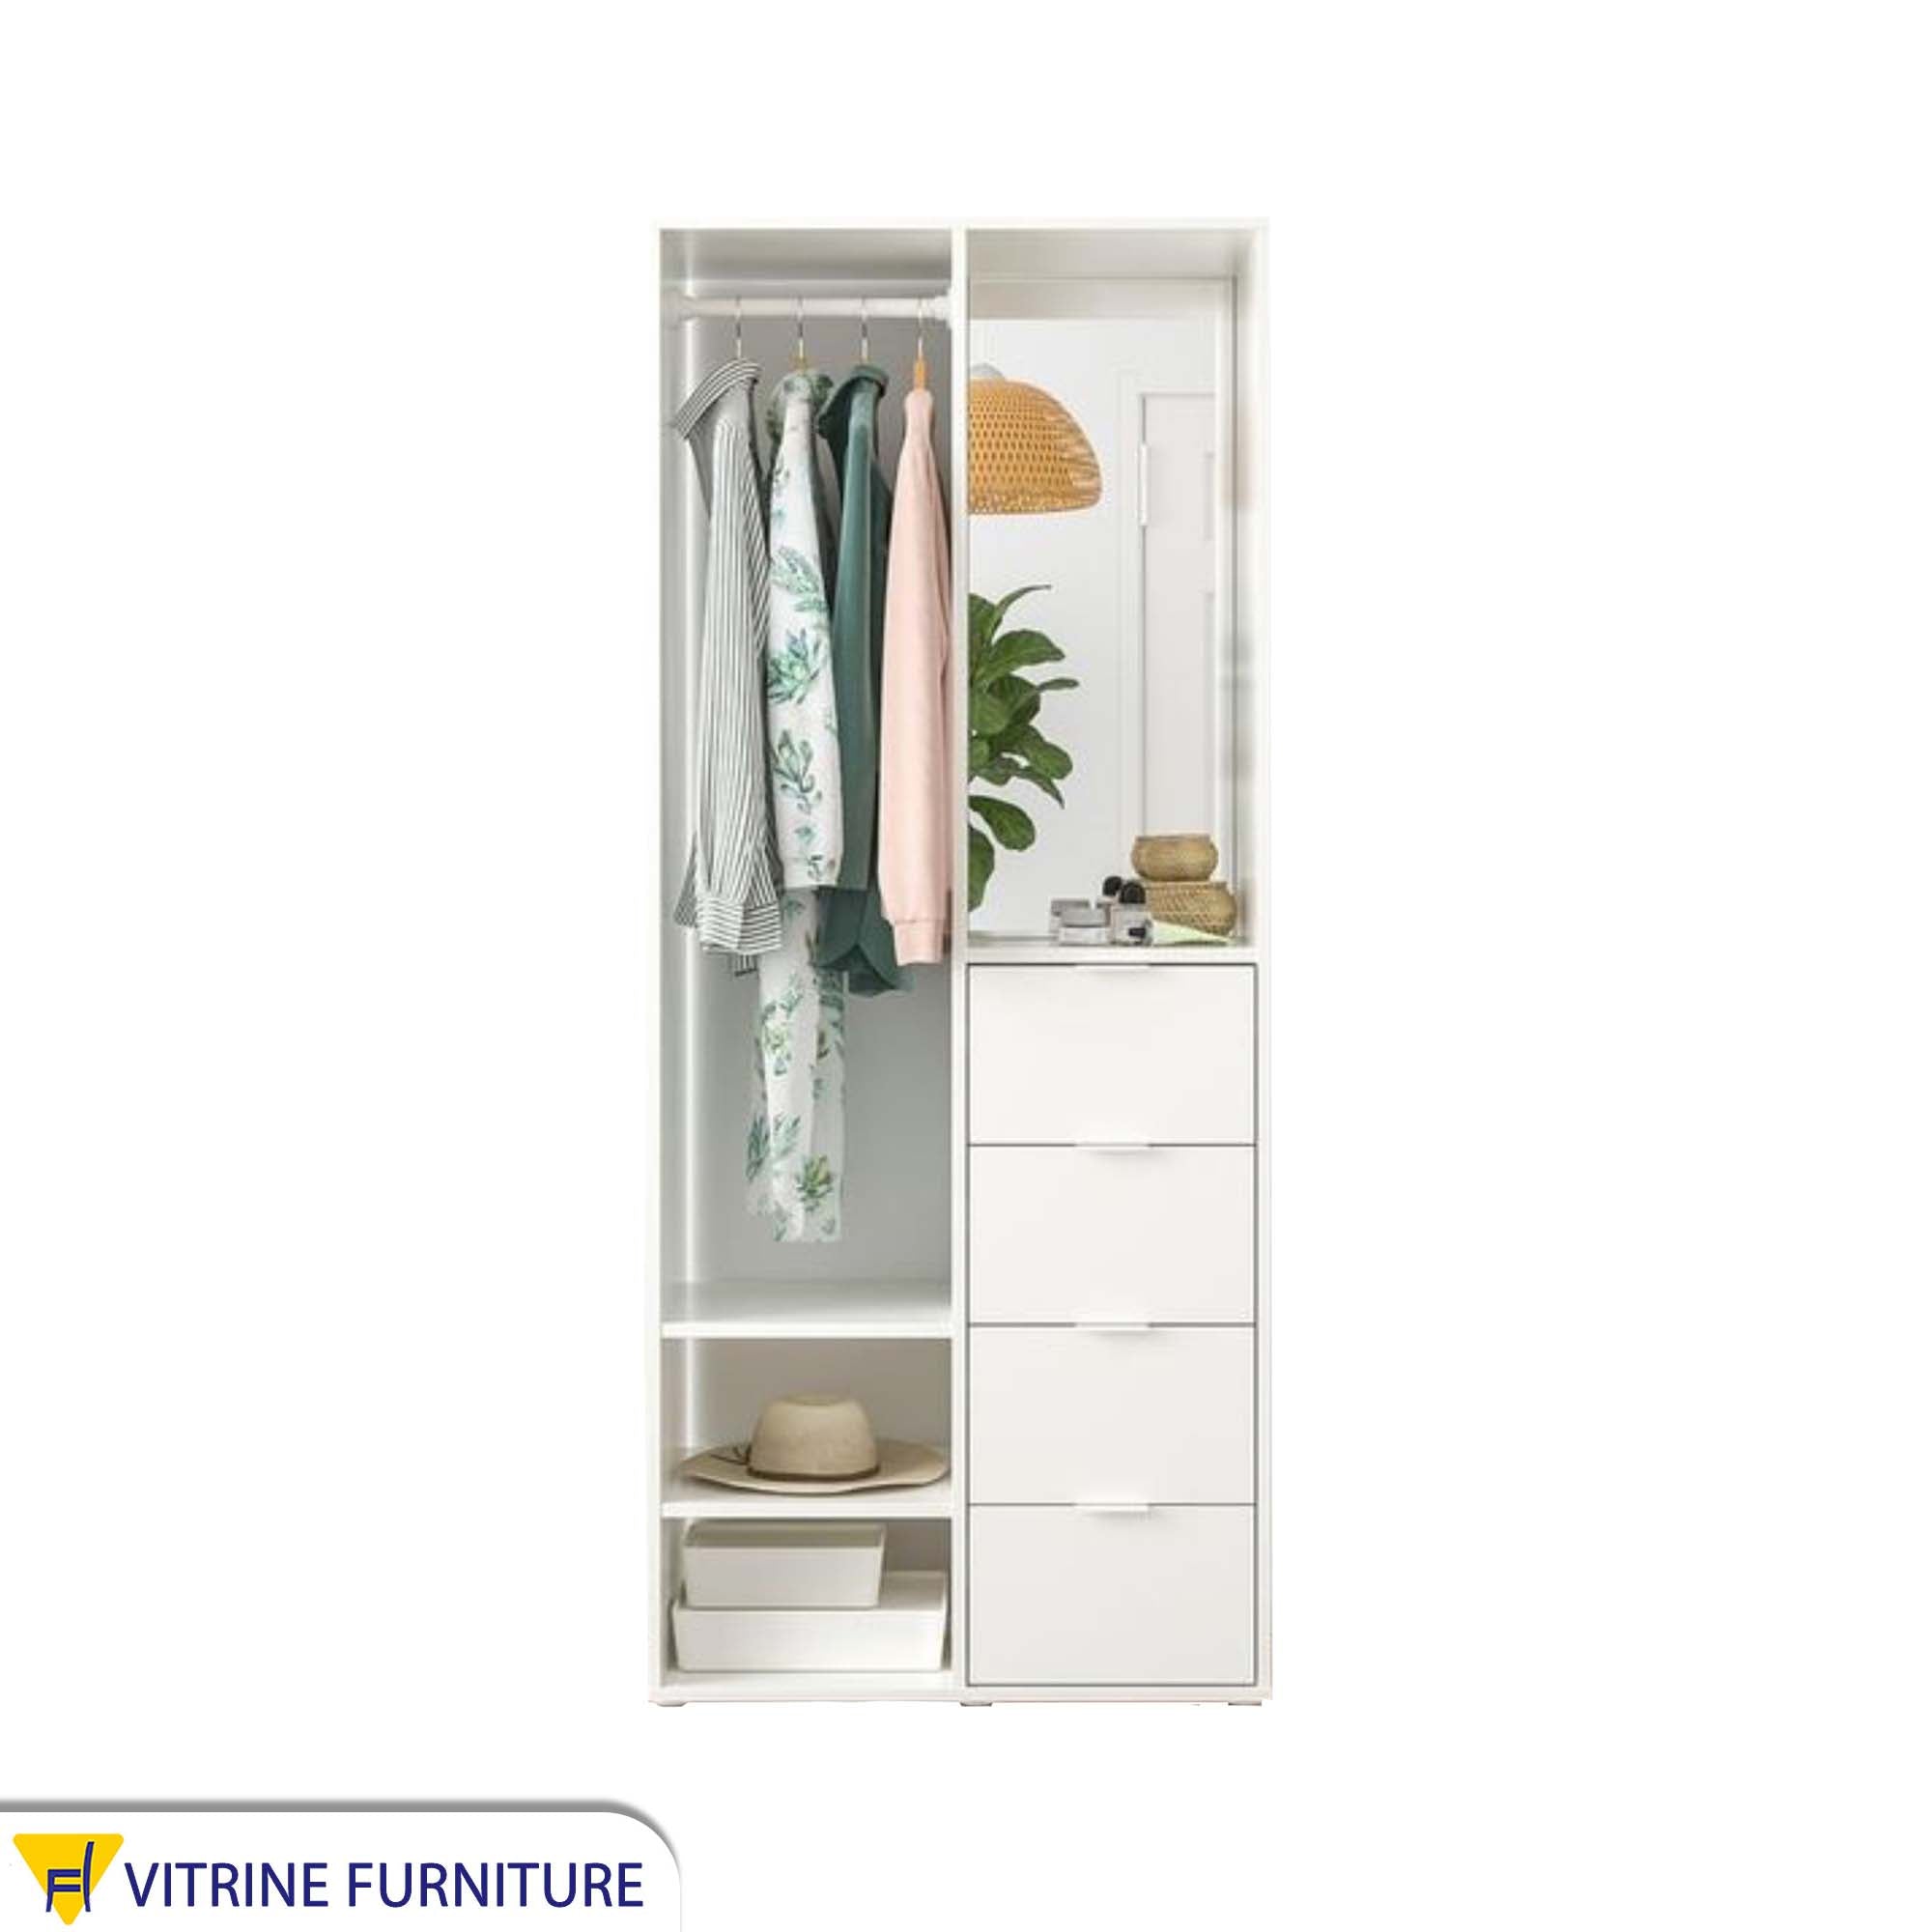 Double-door wardrobe in white